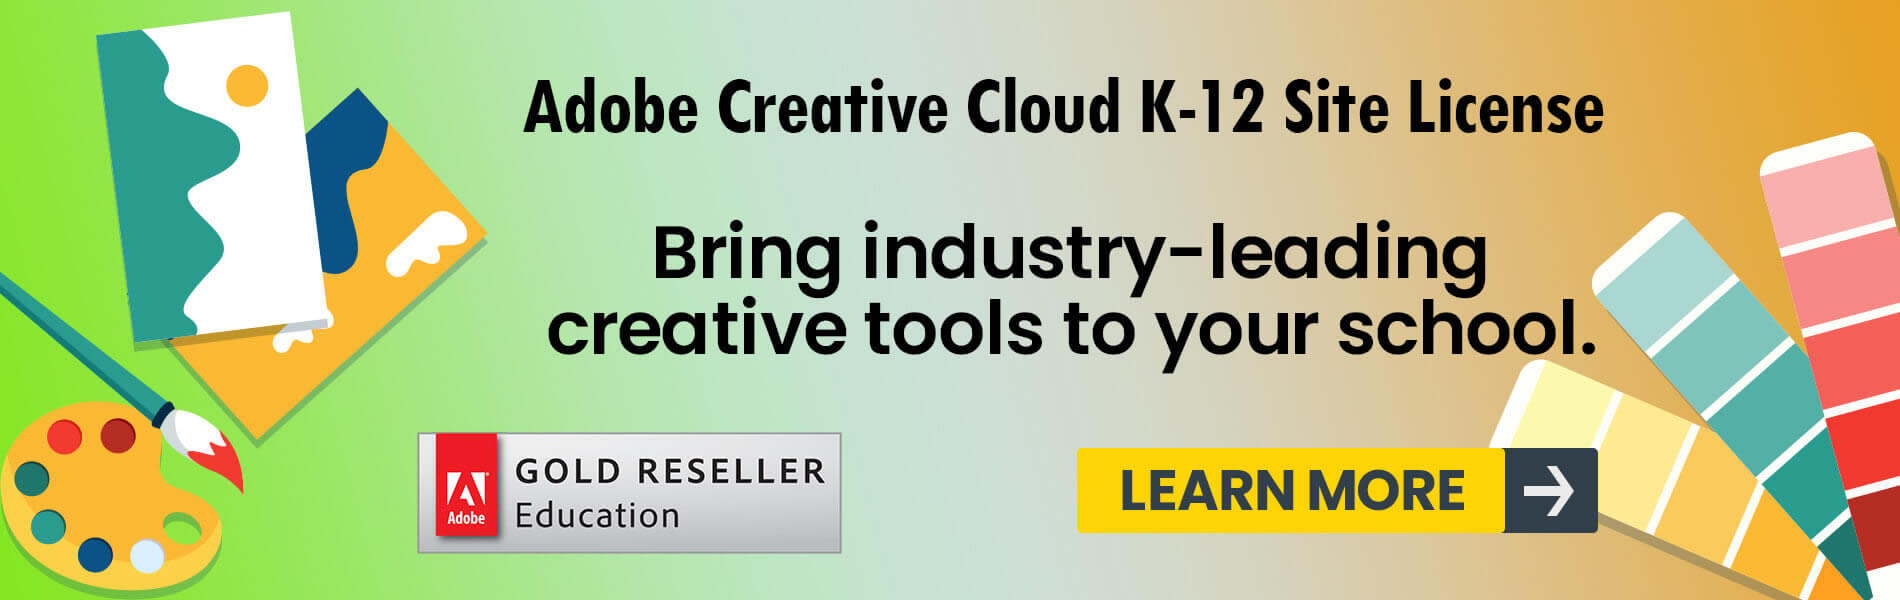 Adobe Creative Cloud K-12 Site License